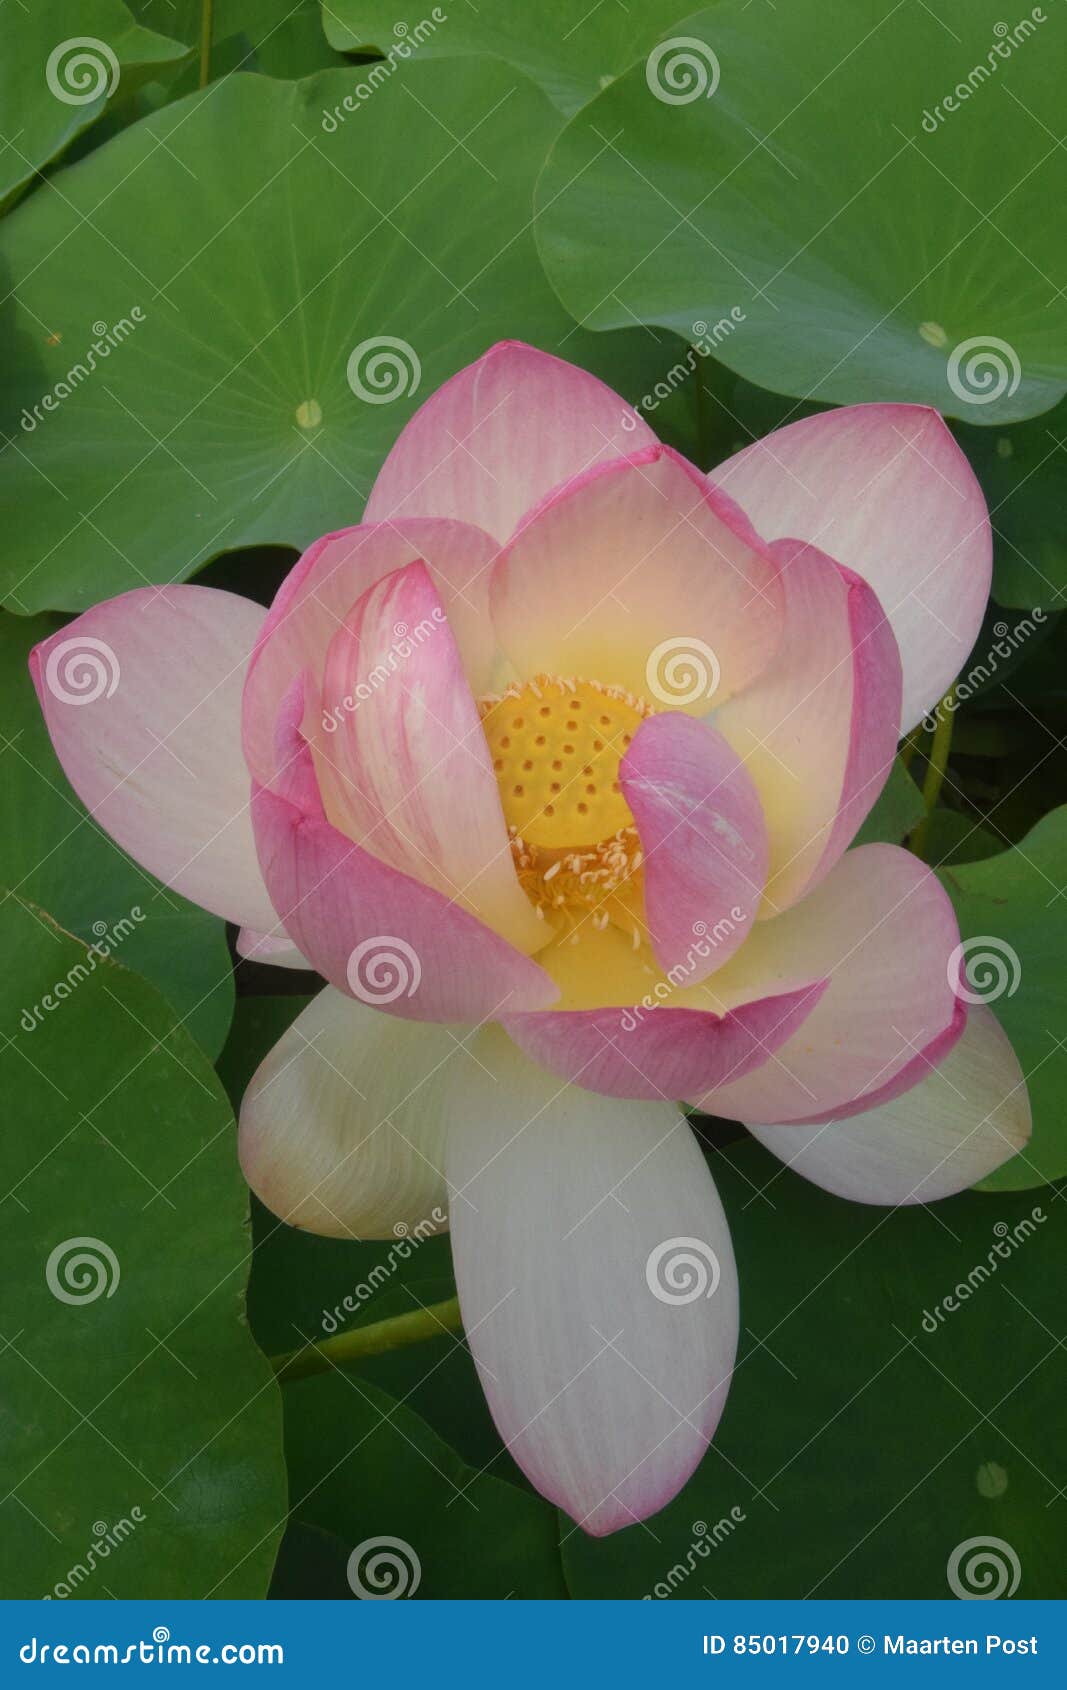 Botanical Garden Vienna Indian Lotus Stock Photo Image Of Bean